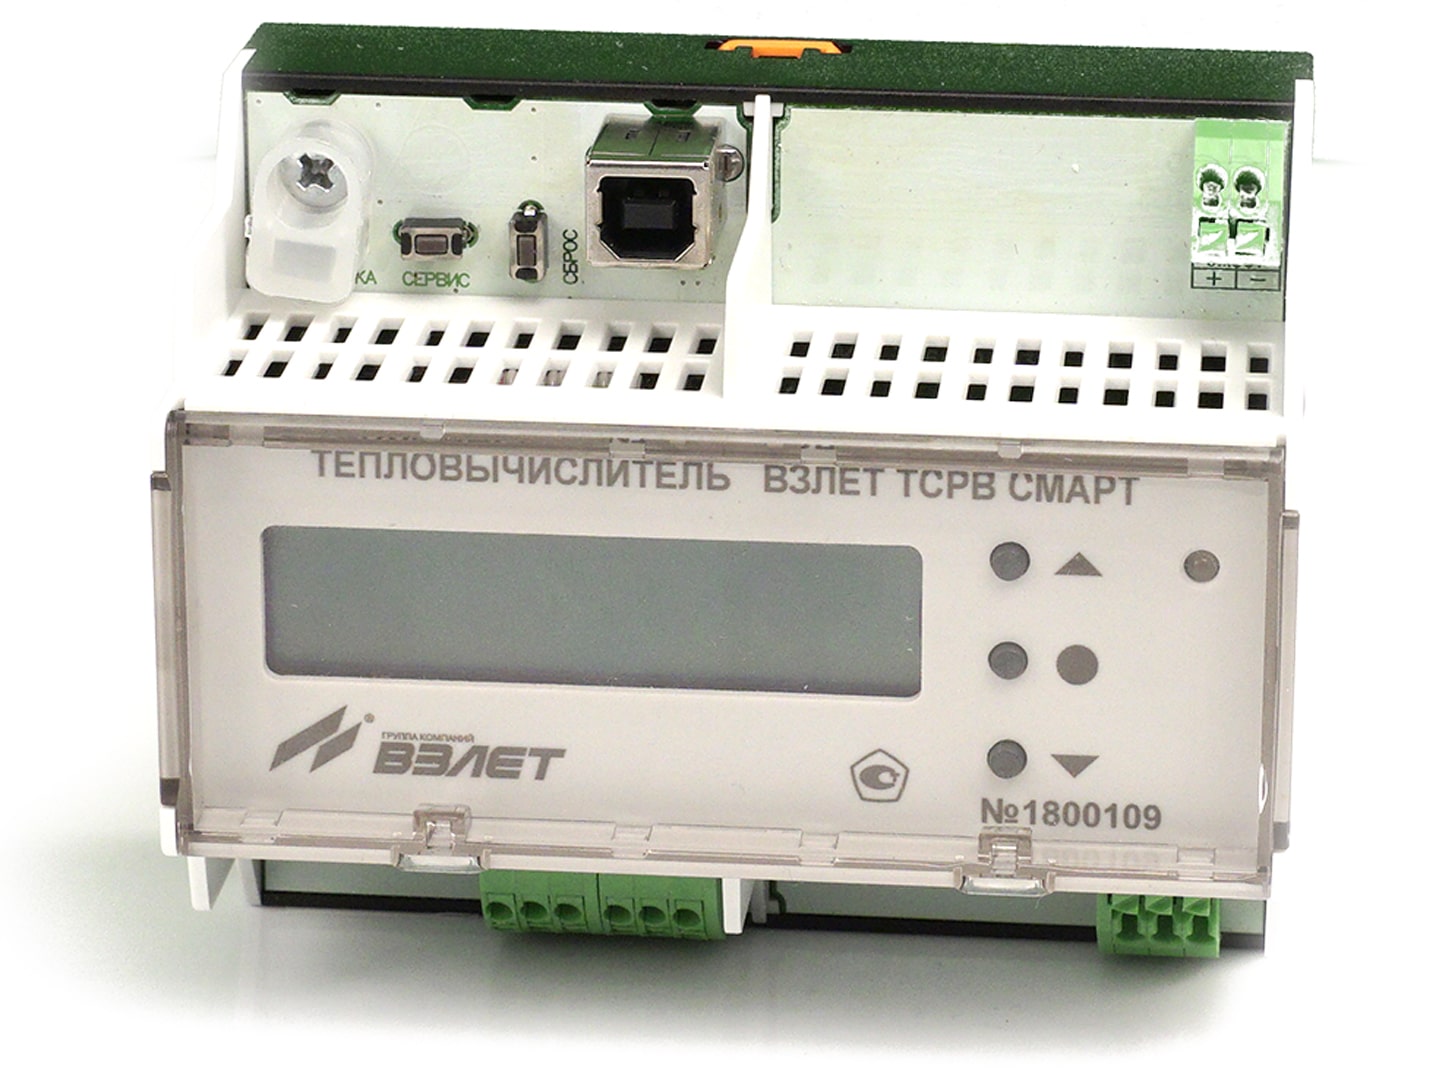 Оборудование для учета тепловой энергии - Взлет ТСР СМАРТ